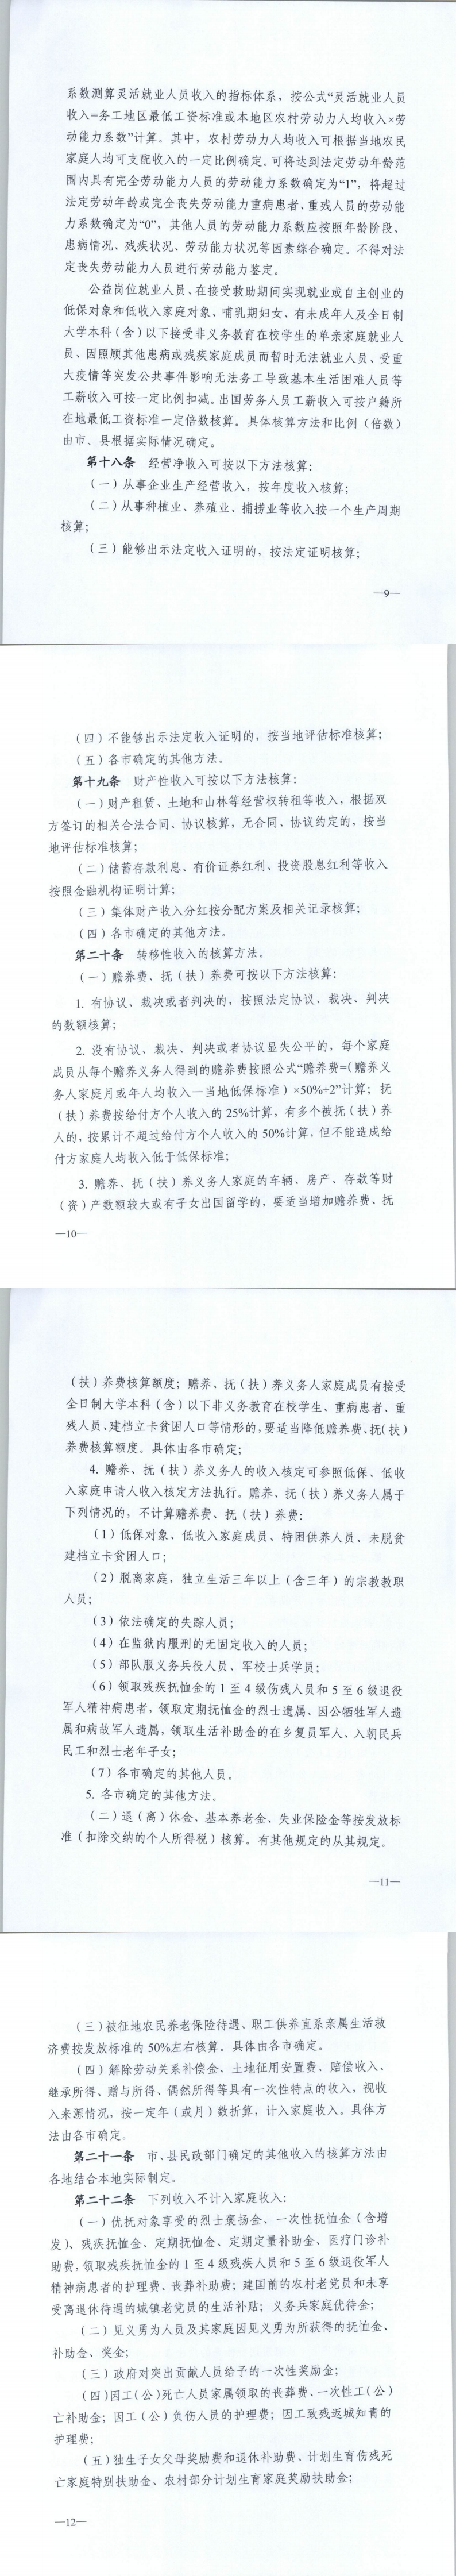 辽宁省最低生活保障、低收入家庭对象认定办法3.png